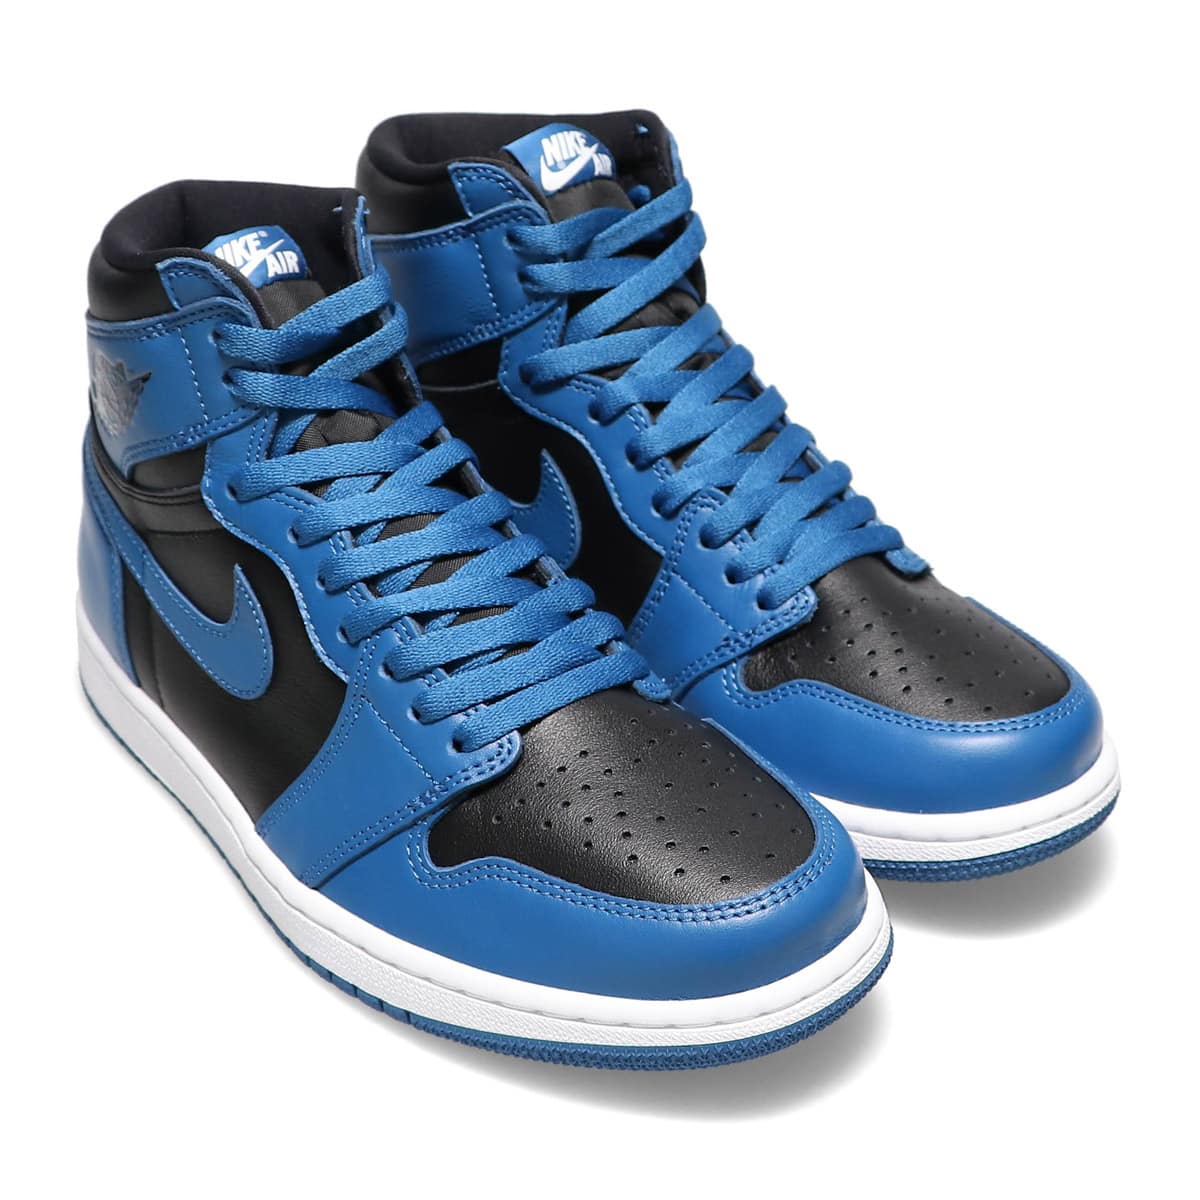 Nike  Air Jordan 1  "Dark Marina Blue"